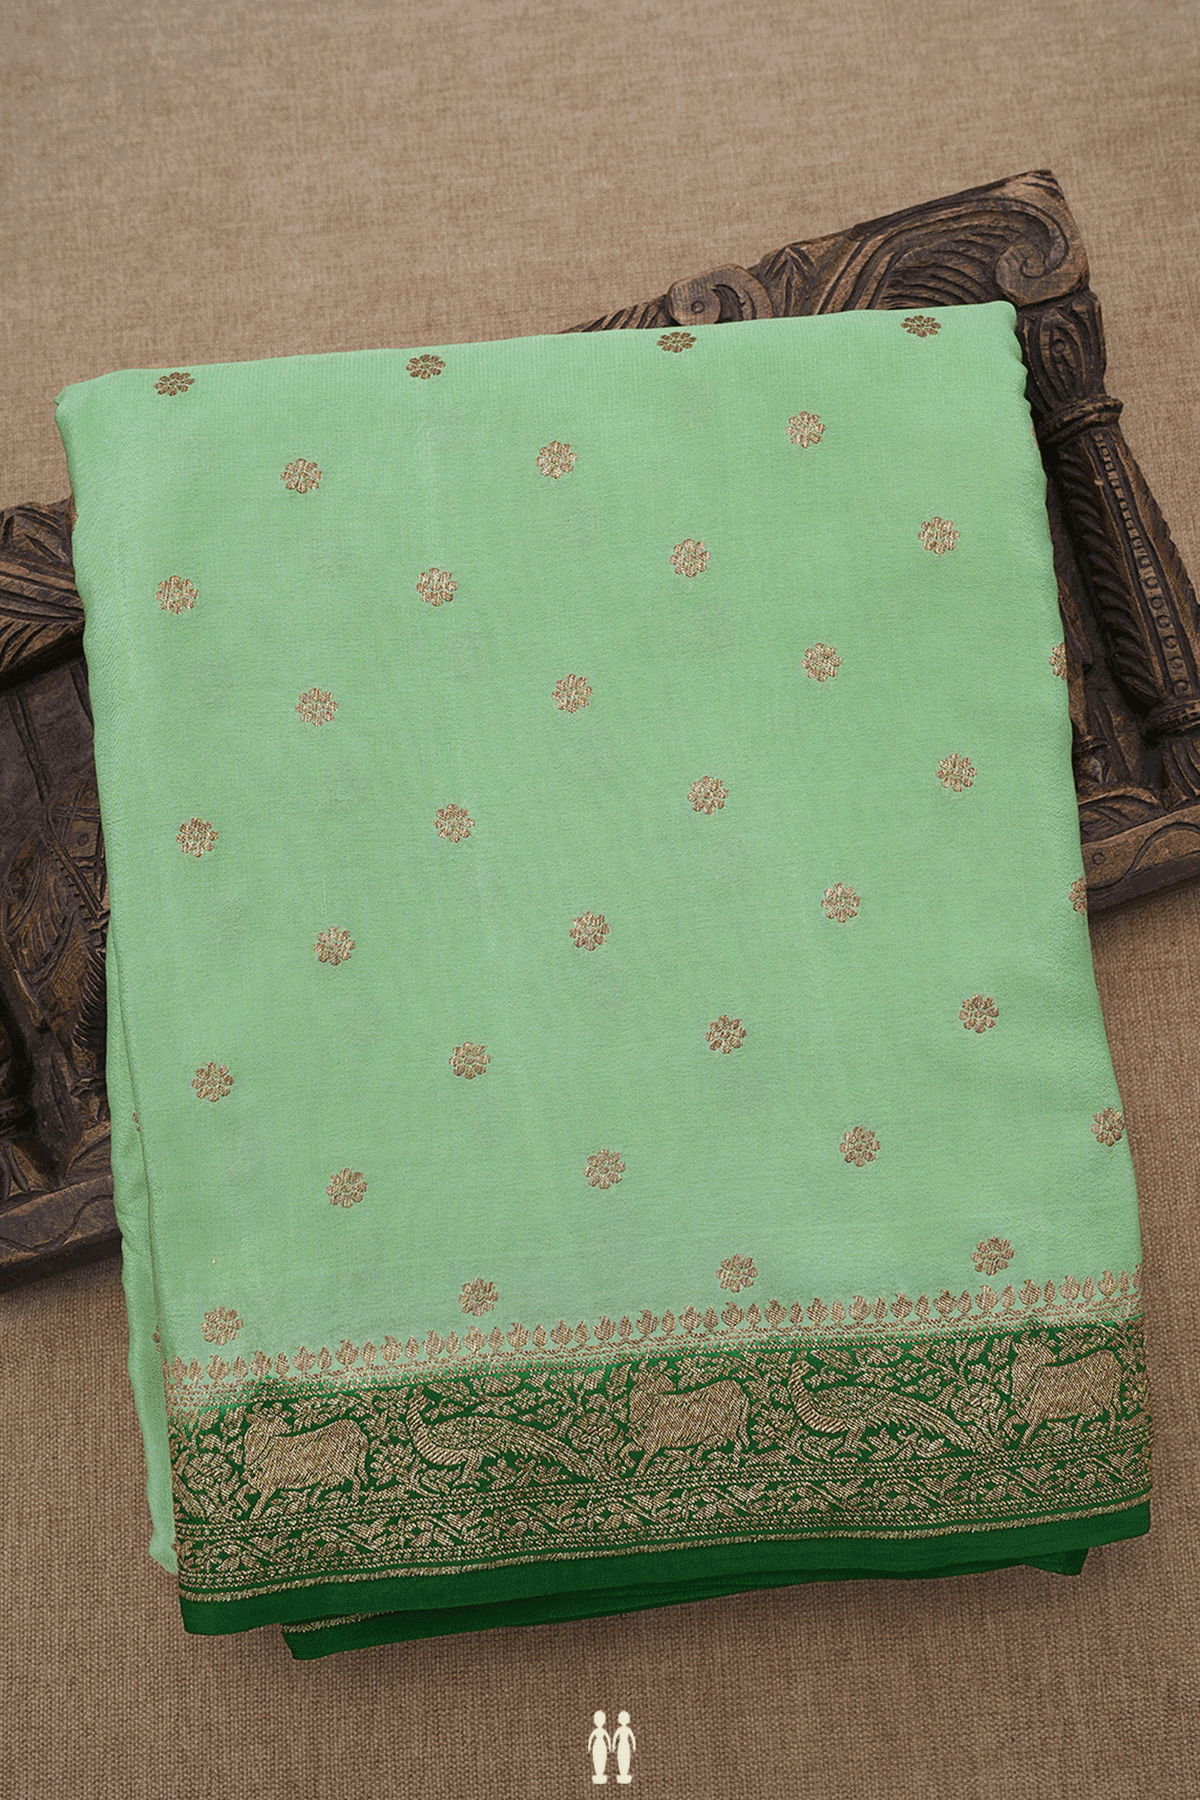 Floral Buttas Pastel Green Georgette Banarasi Silk Saree